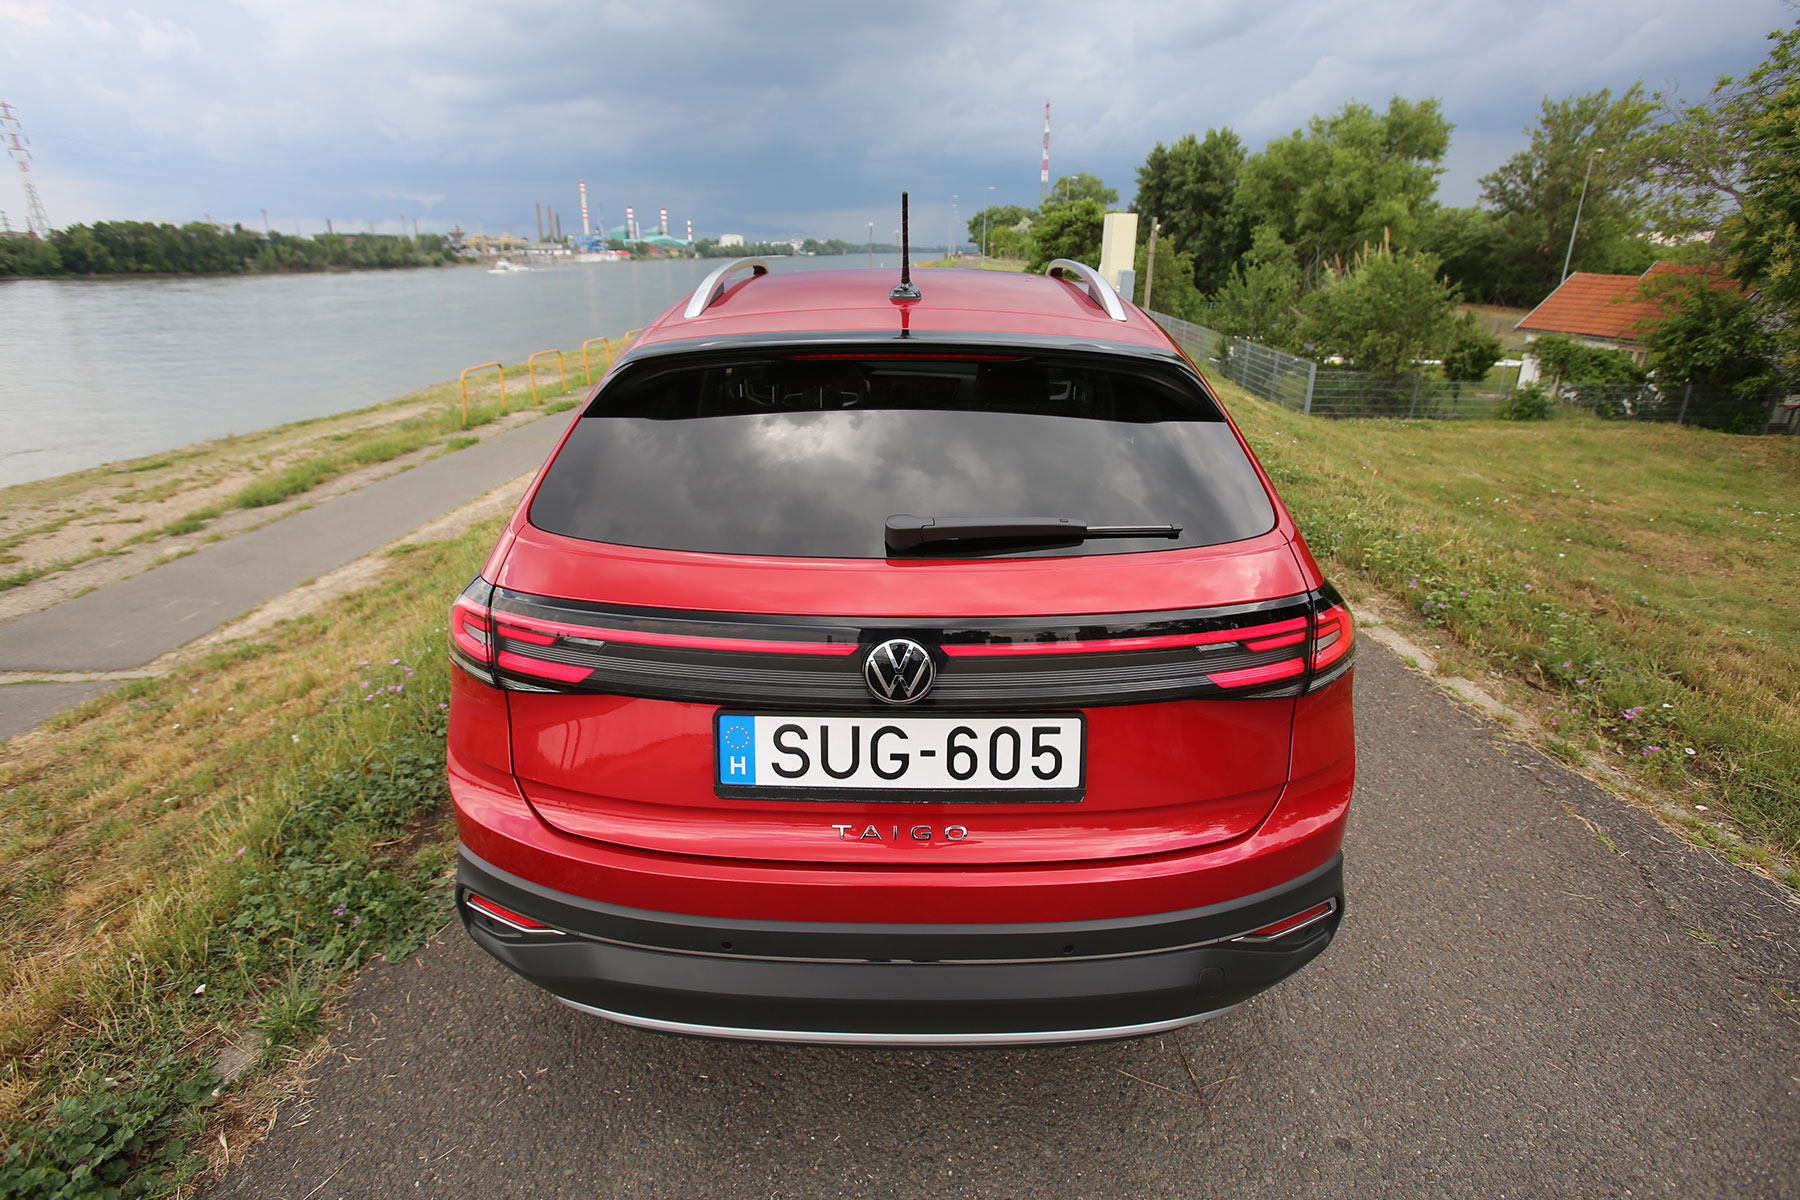 Rizikós autót hoz Magyarországra a Volkswagen 14